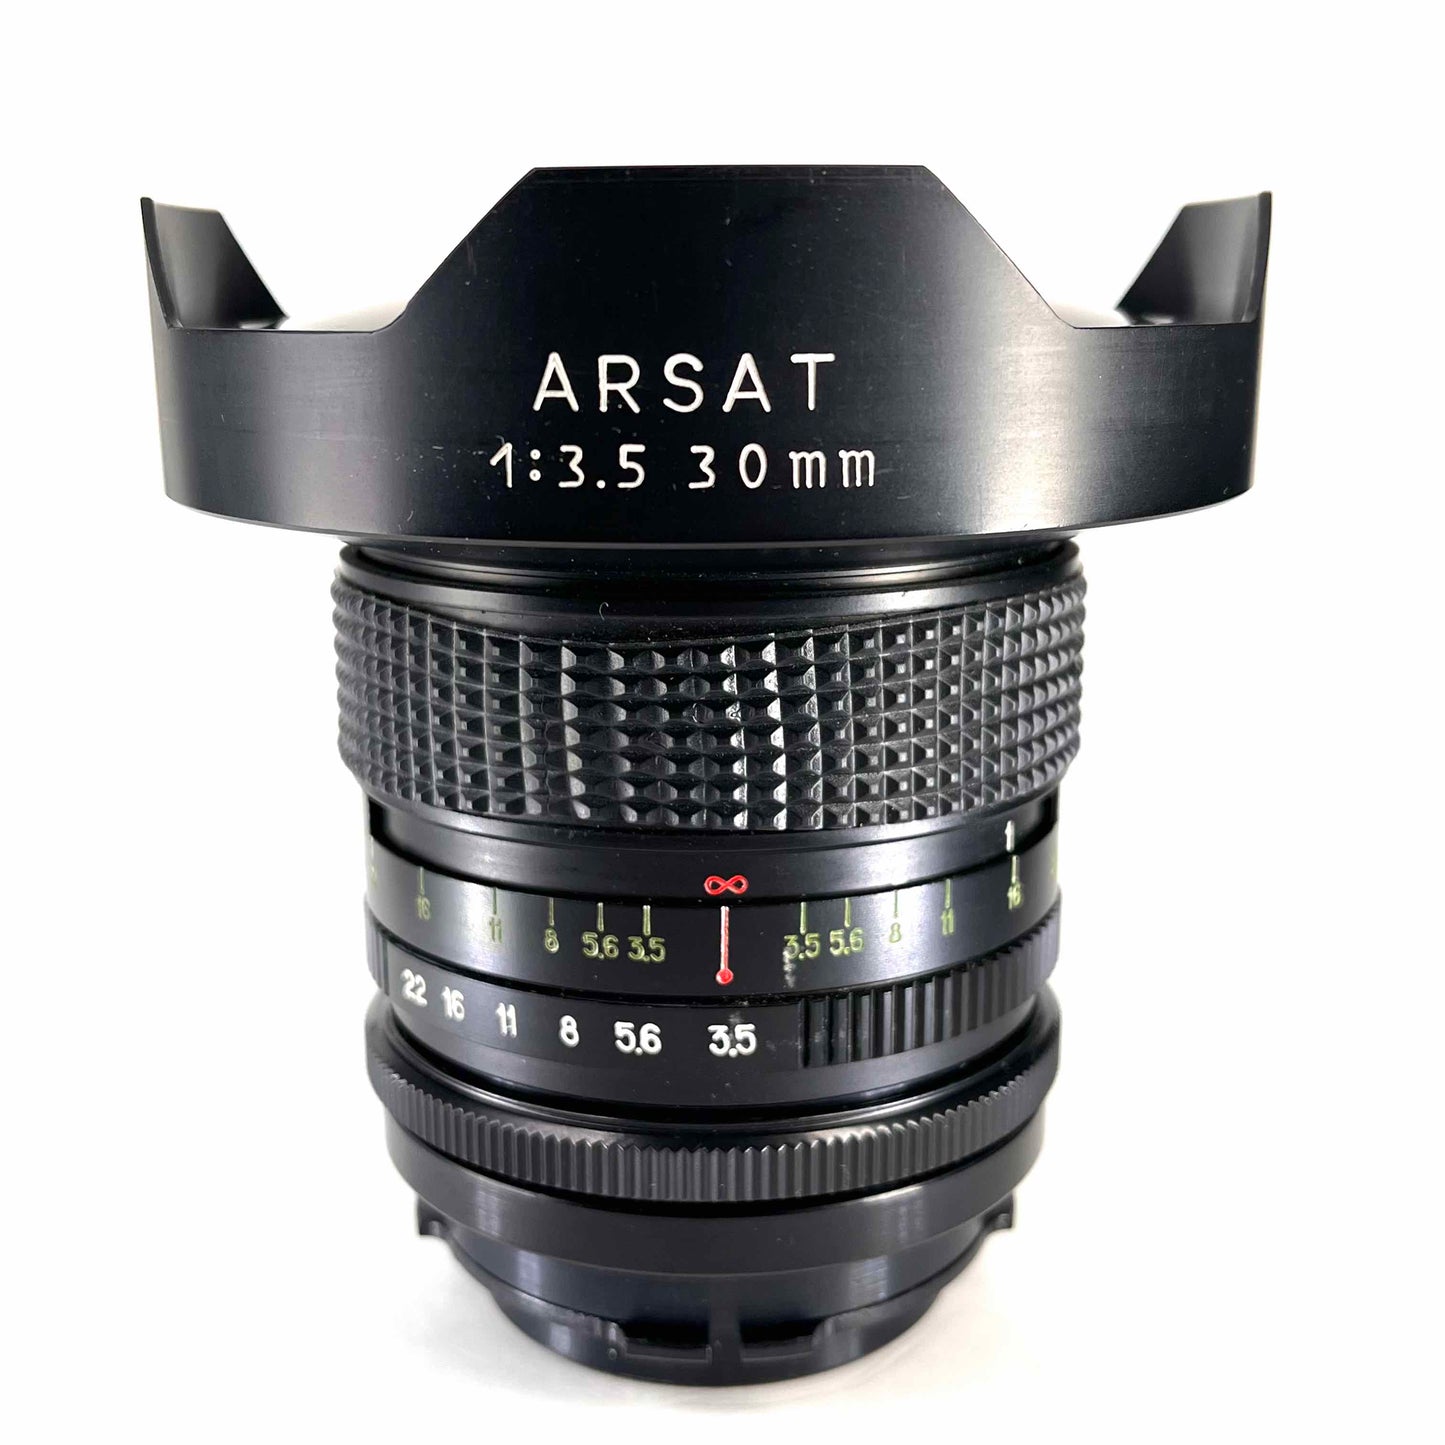 Zodiac-8 ARSAT 30mm f3.5 Fisheye